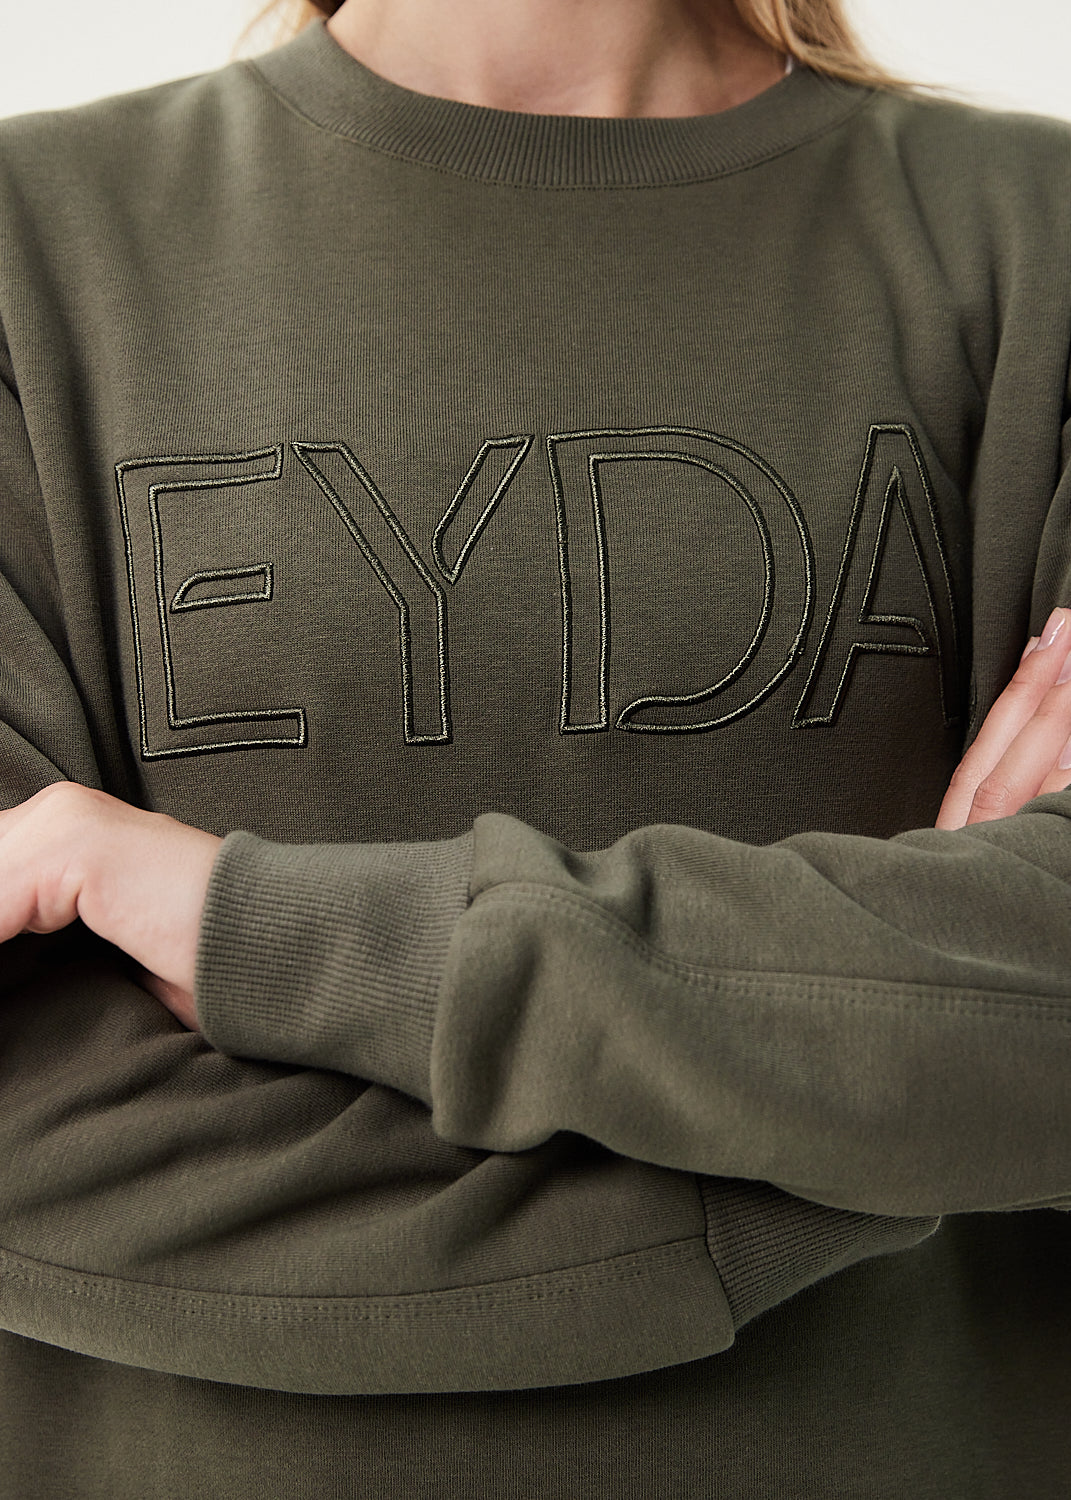 lang sweatshirt med EYDA logo foran